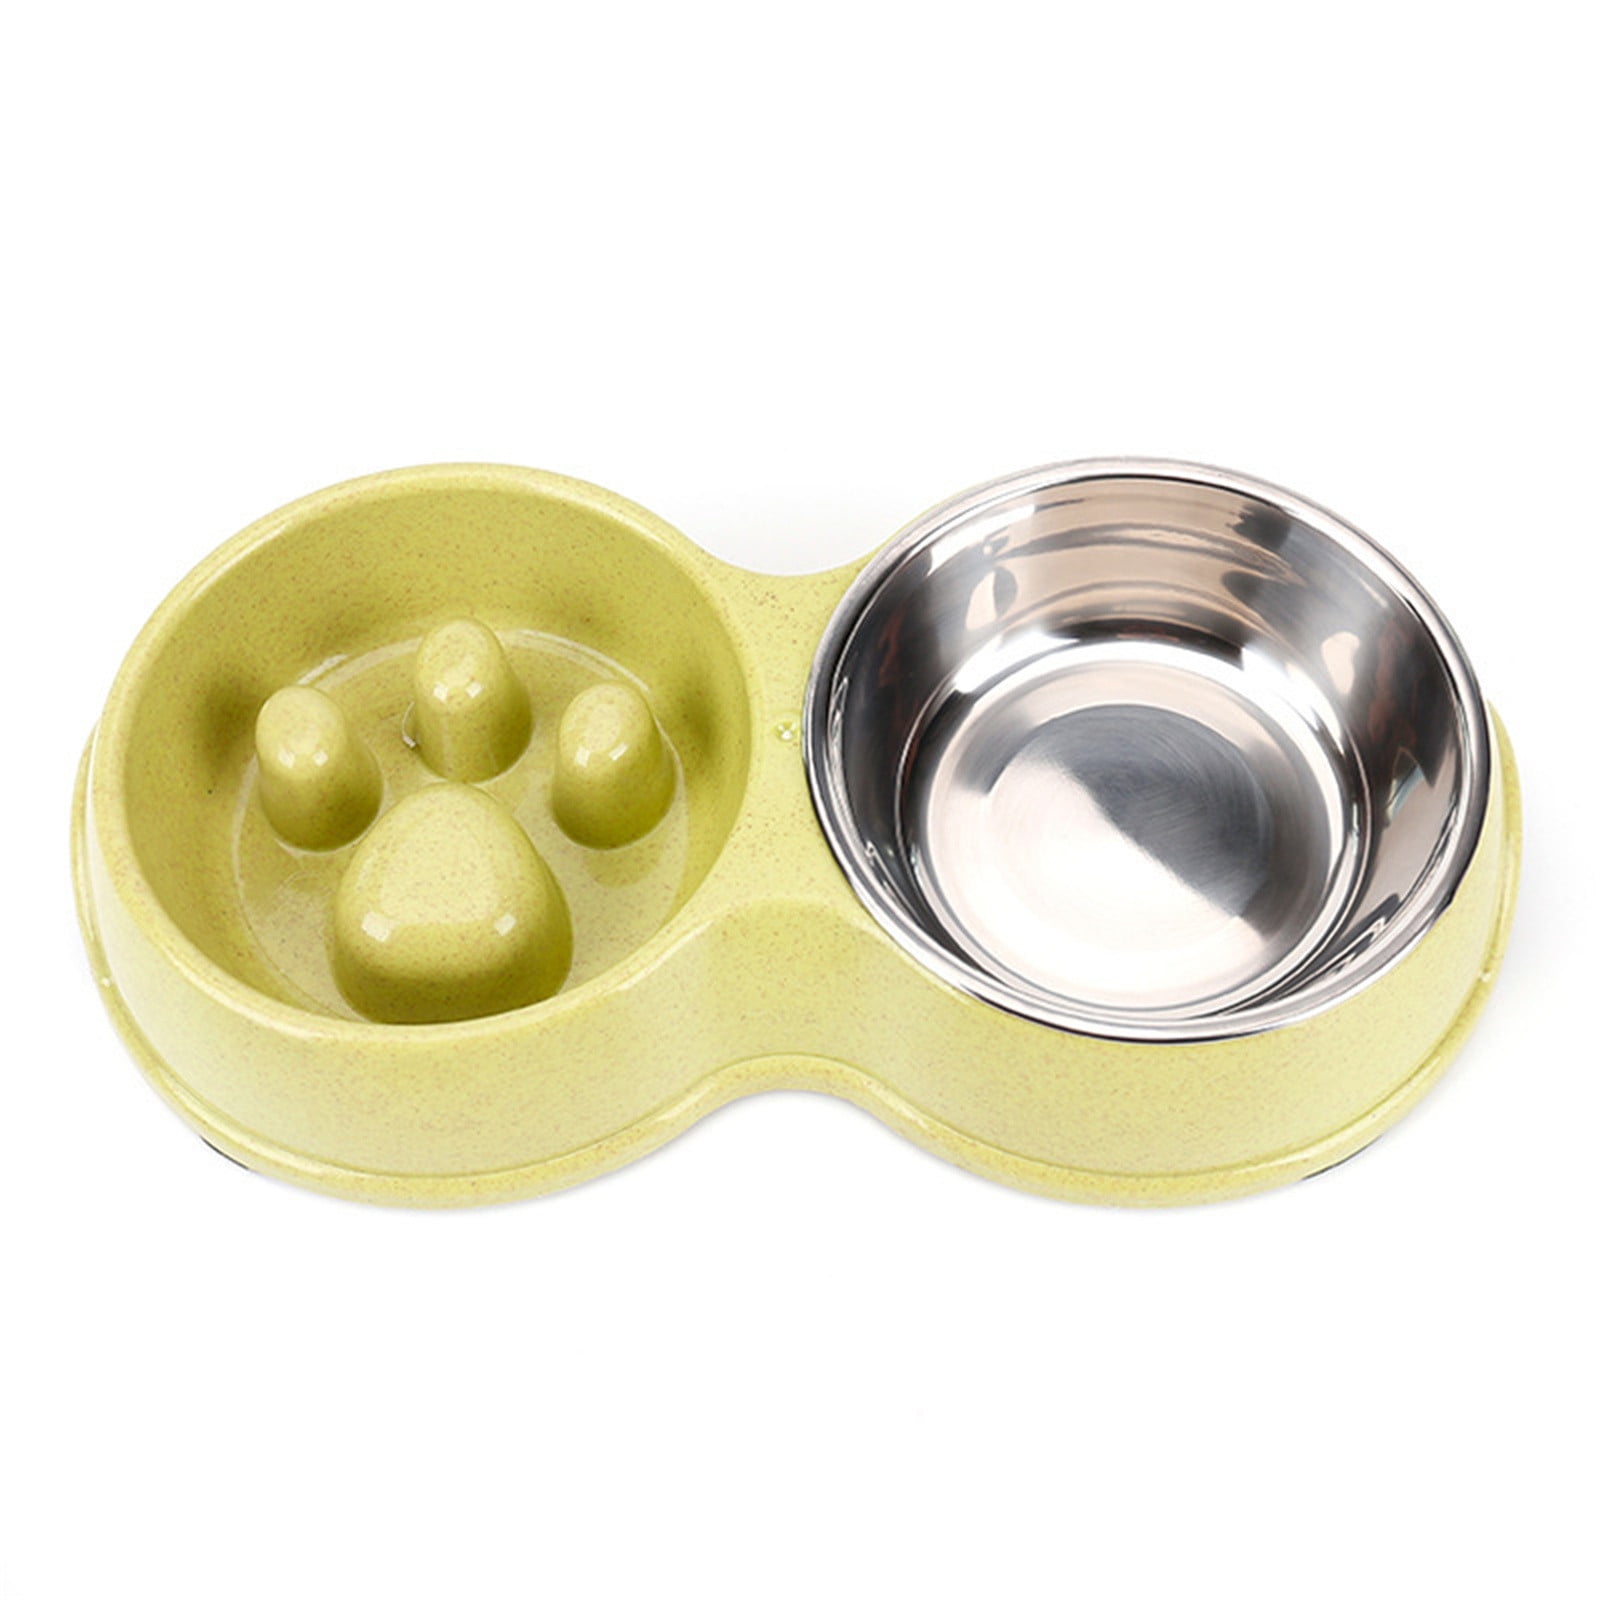 Opwekking innovatie kraam Straw Slow Food Anti-Choking Stainless Steel Double Bowl Pet Food Utensils  Pet Cat Food Bowl - Walmart.com